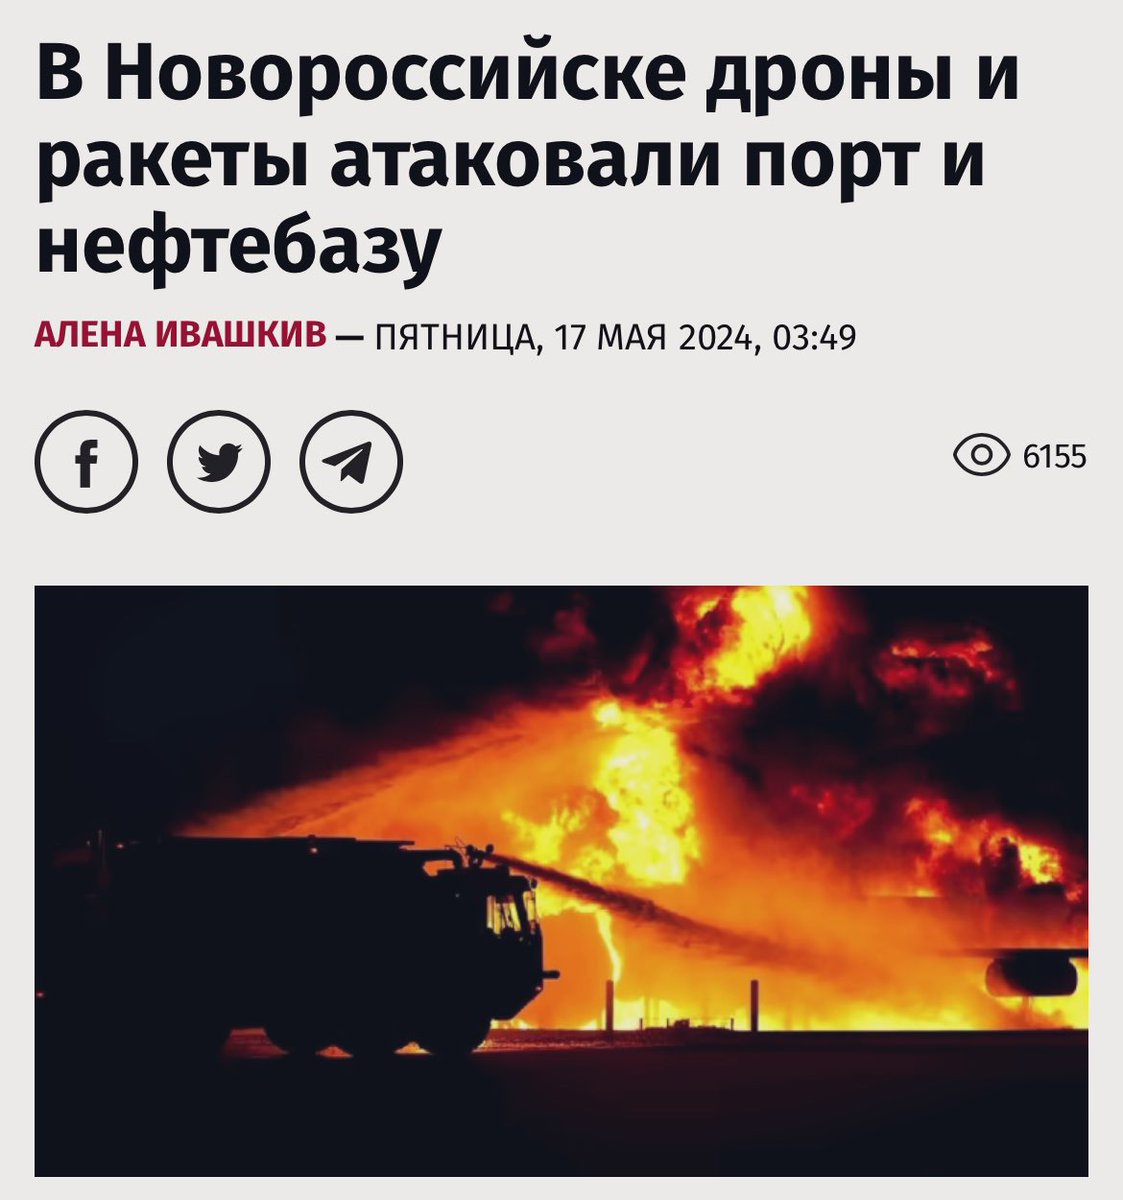 Сделаем Черное море внутренним морем Украины!
😀